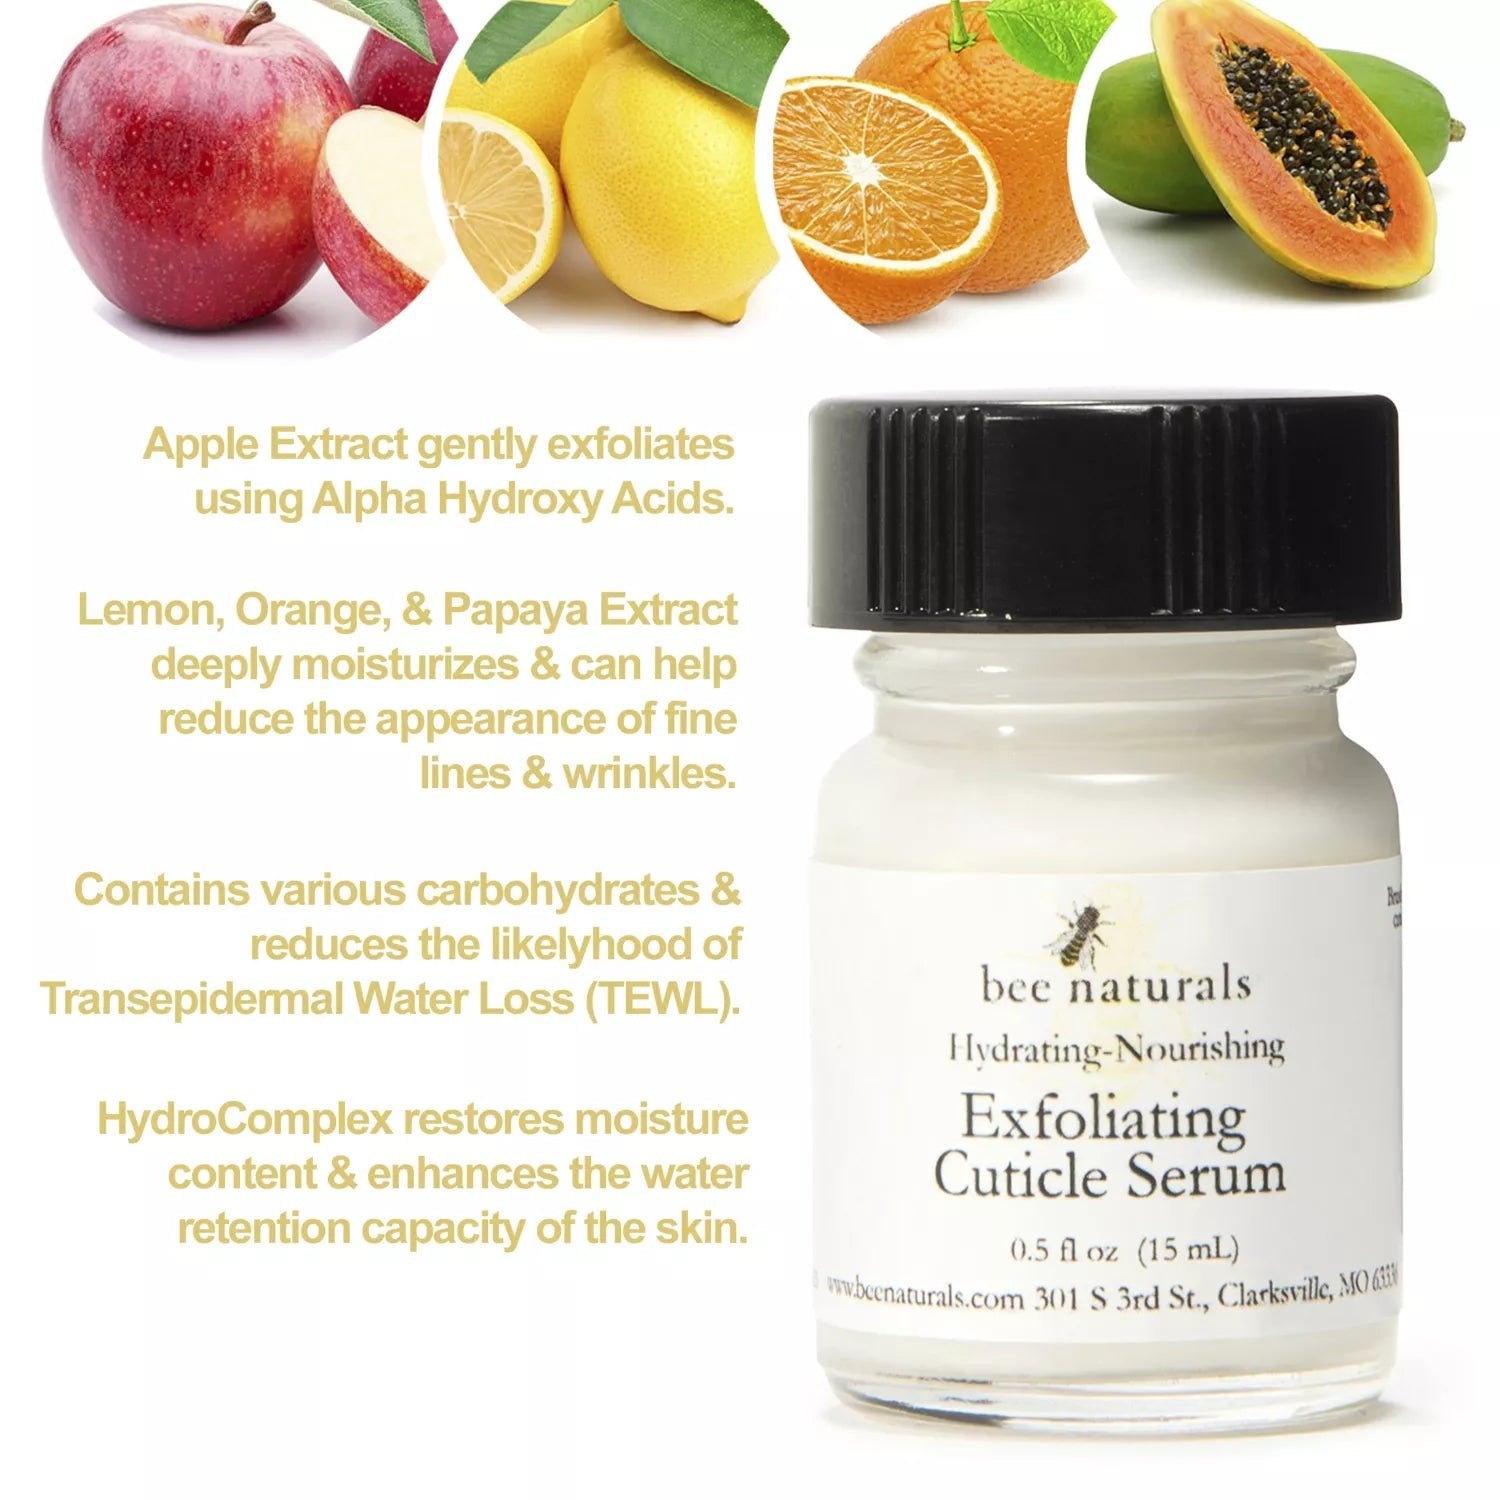 Exfoliating Cuticle Serum Hydrating & Nourishing - Bee Naturals Store